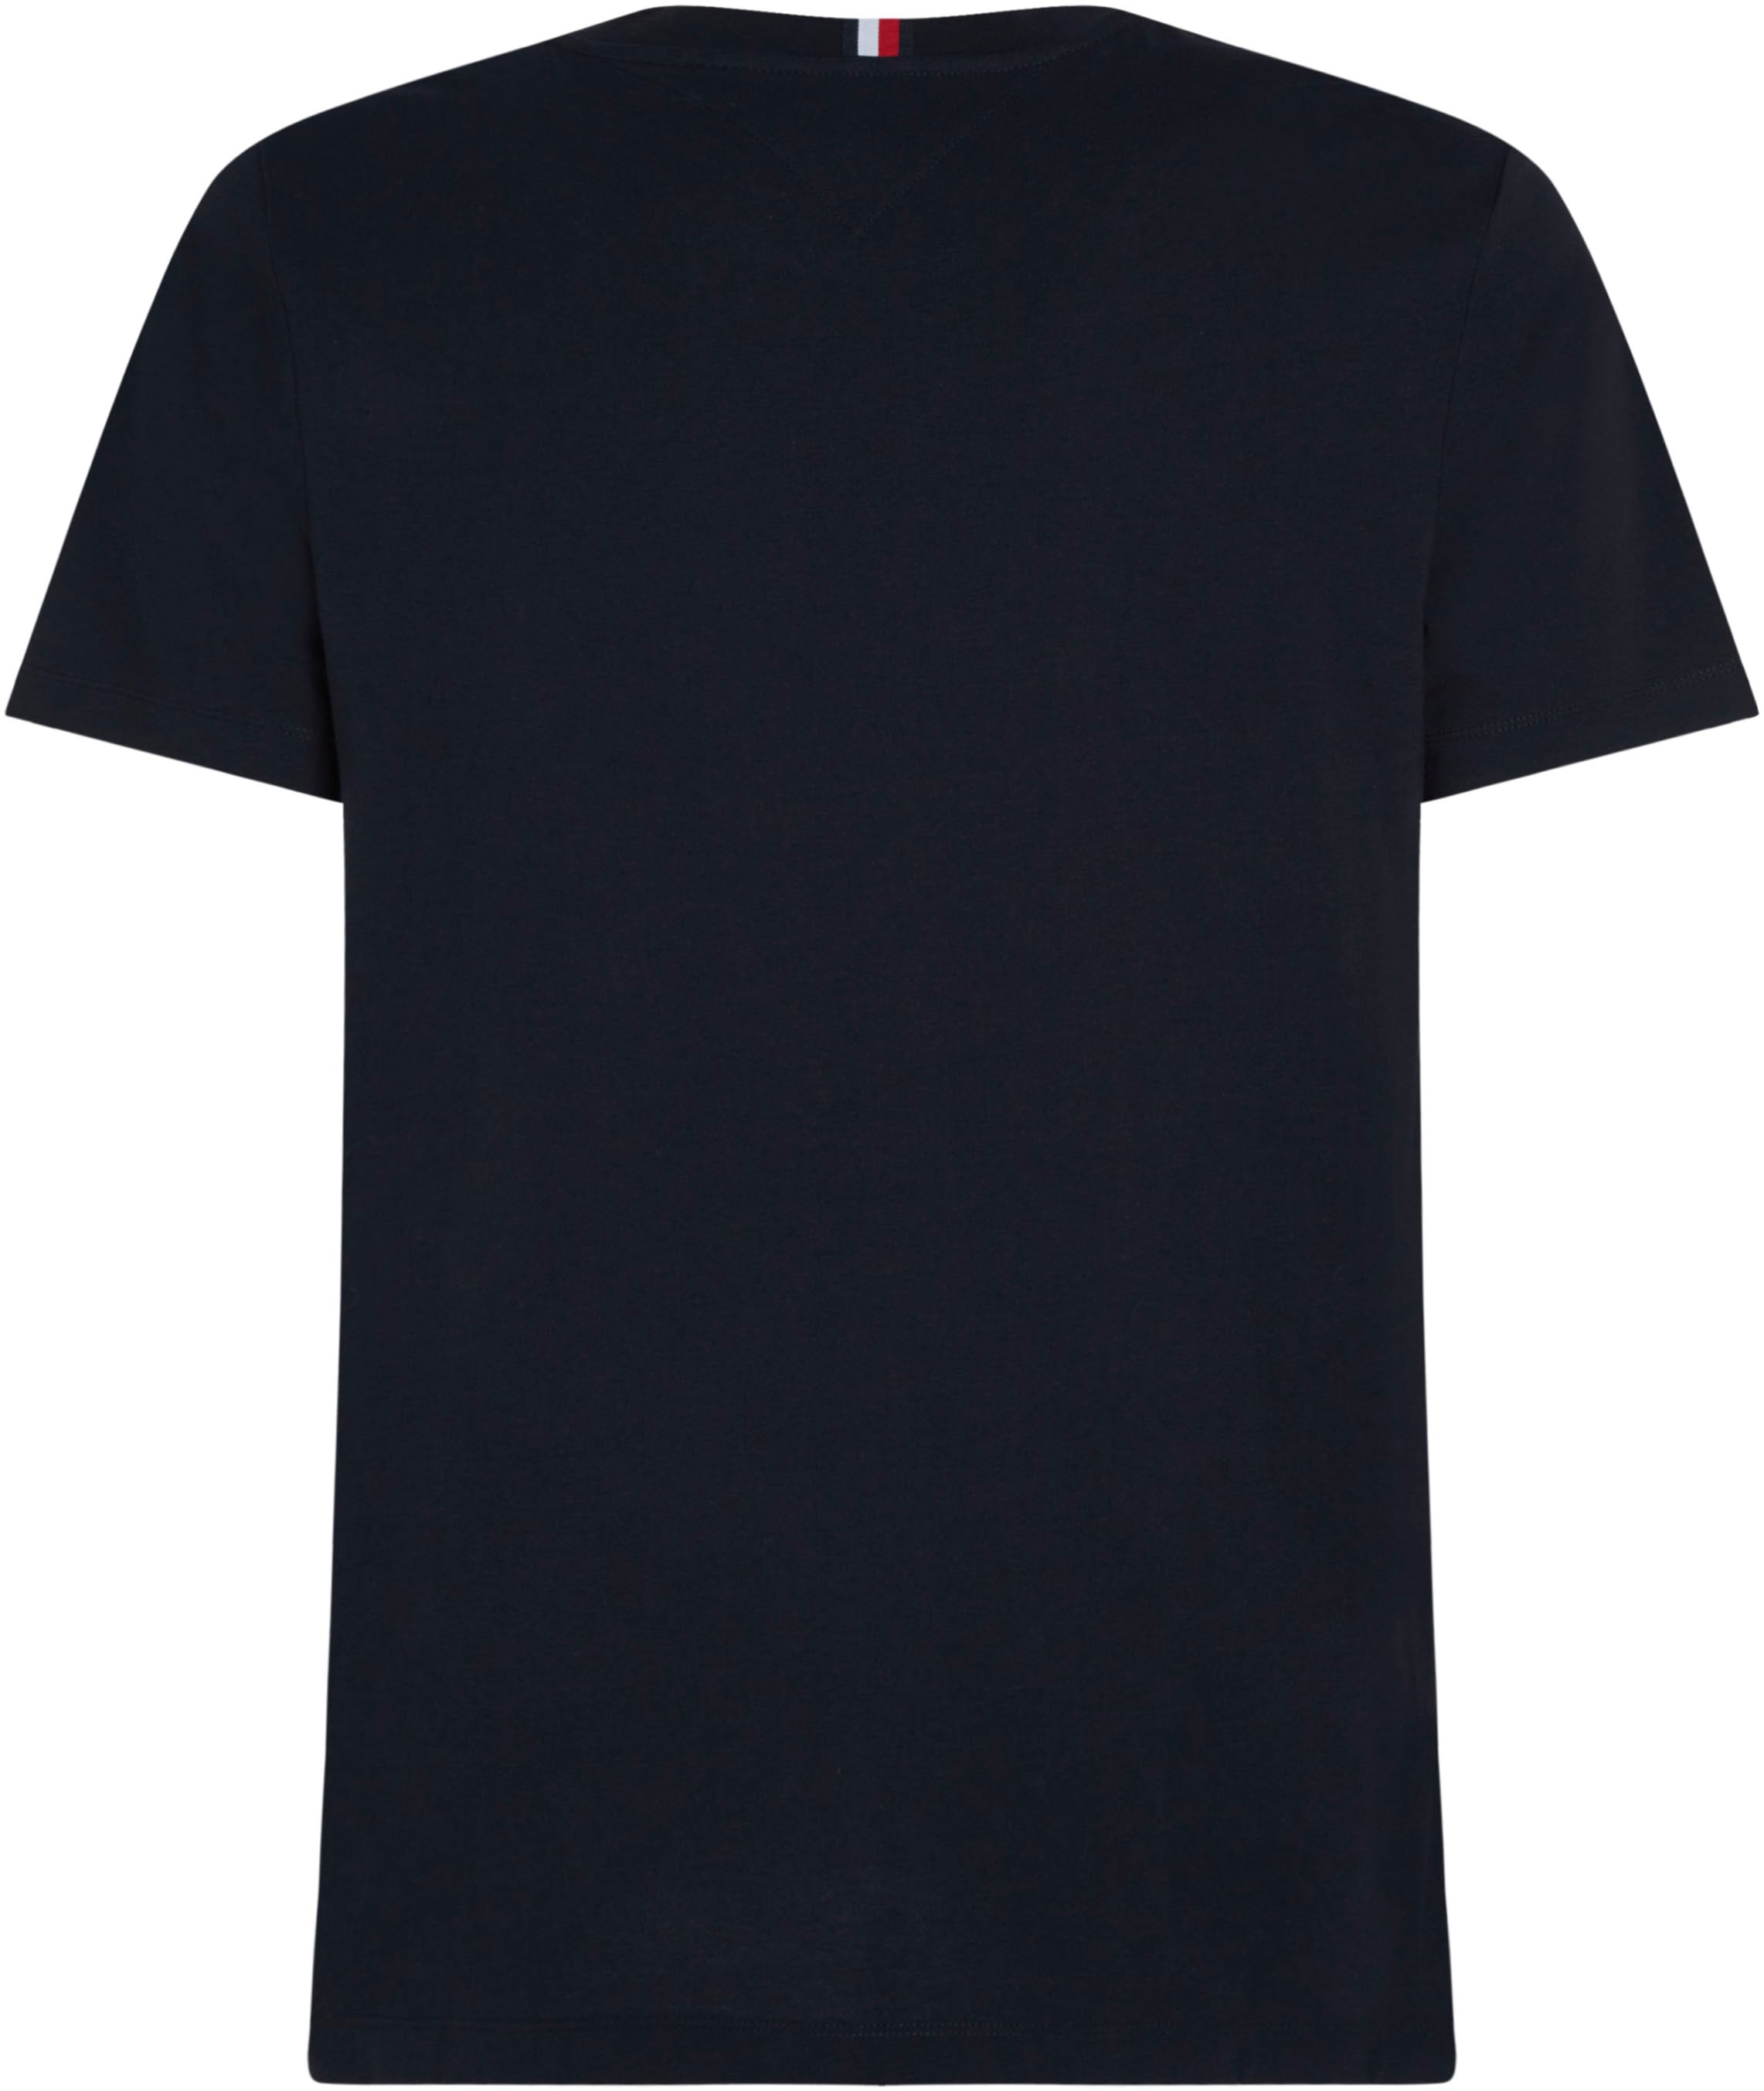 Hilfiger mit Tommy CHEST Markenlogo STRIPE »MONOTYPE kaufen TEE«, T-Shirt online